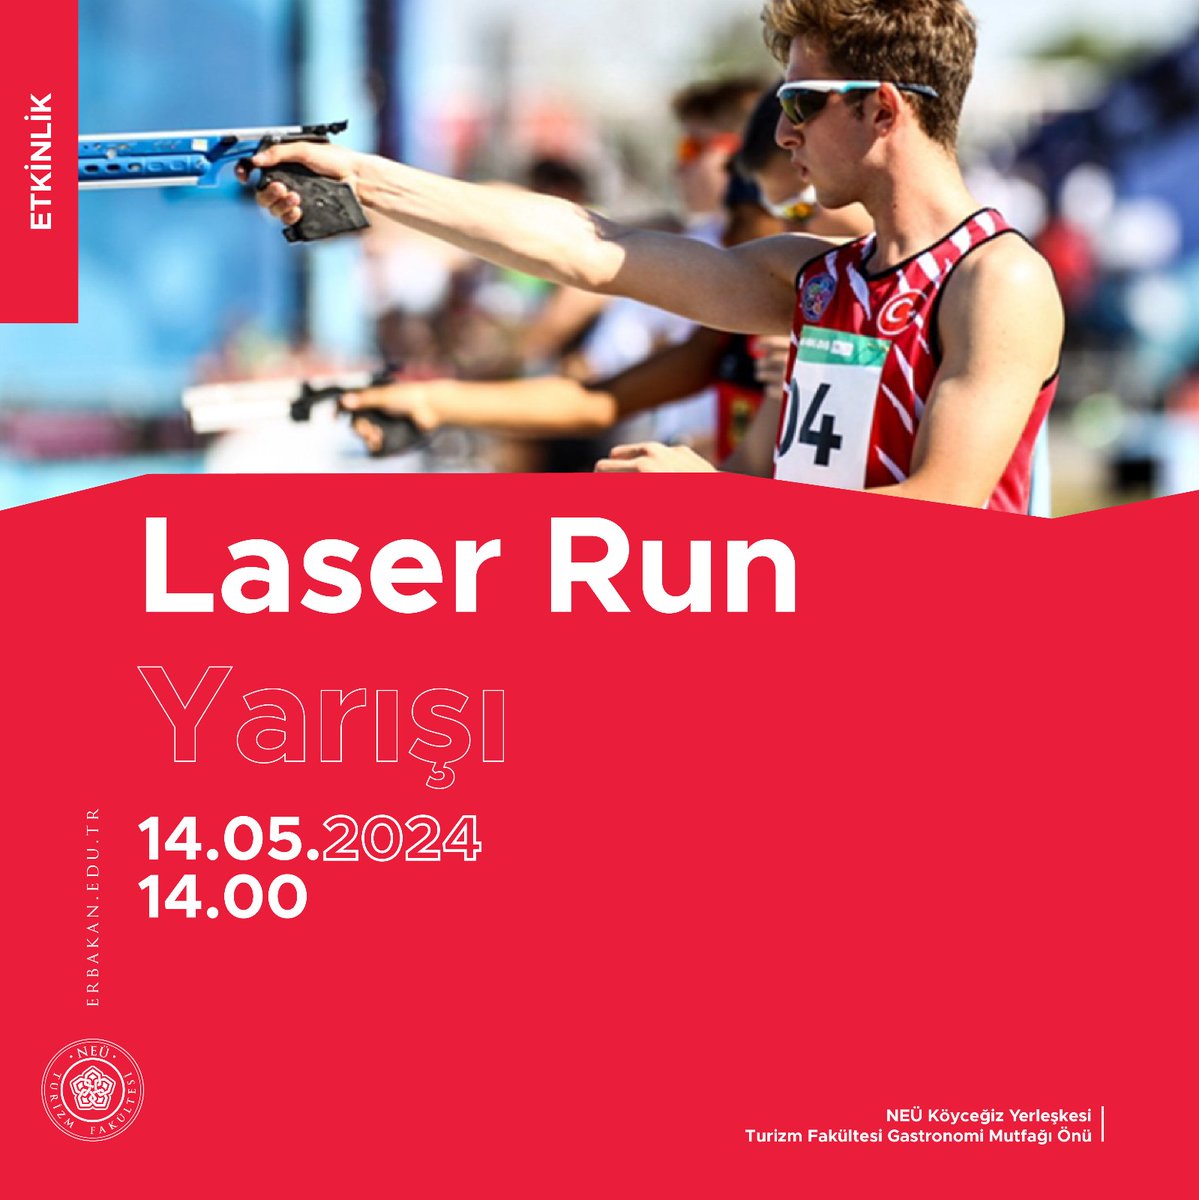 Fakültemiz Dekanlığı tarafından tüm öğrencilerimize yönelik 'Laser Run Yarışı' etkinliği gerçekleştirilecektir. Tüm öğrencilerimiz davetlidir.